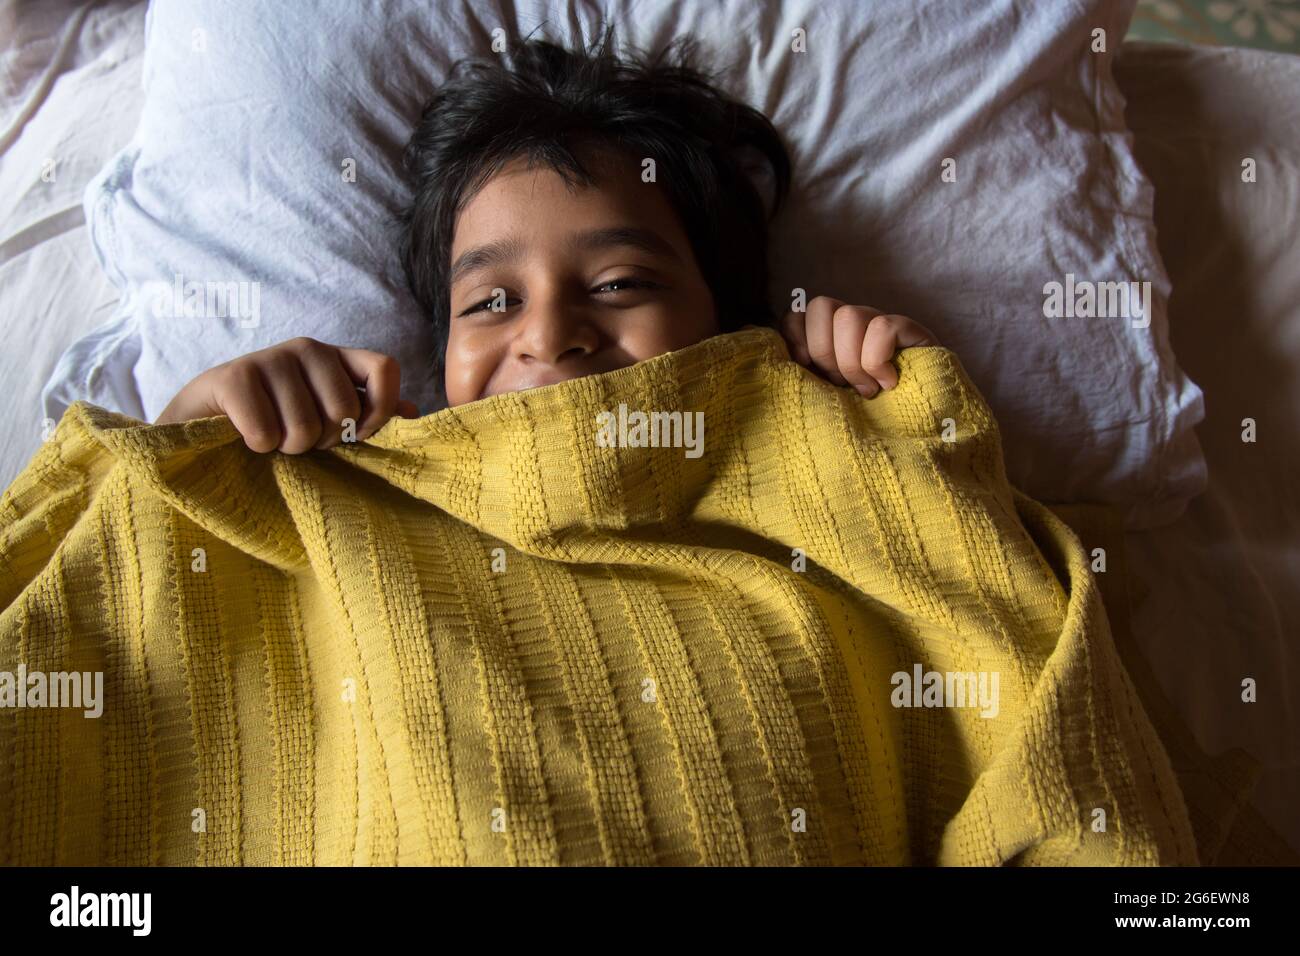 Draufsicht auf einen Jungen im Bett, der mit selektivem Fokus faul aufwacht. Konzept eines faulen Sonntags im Bett. Stockfoto